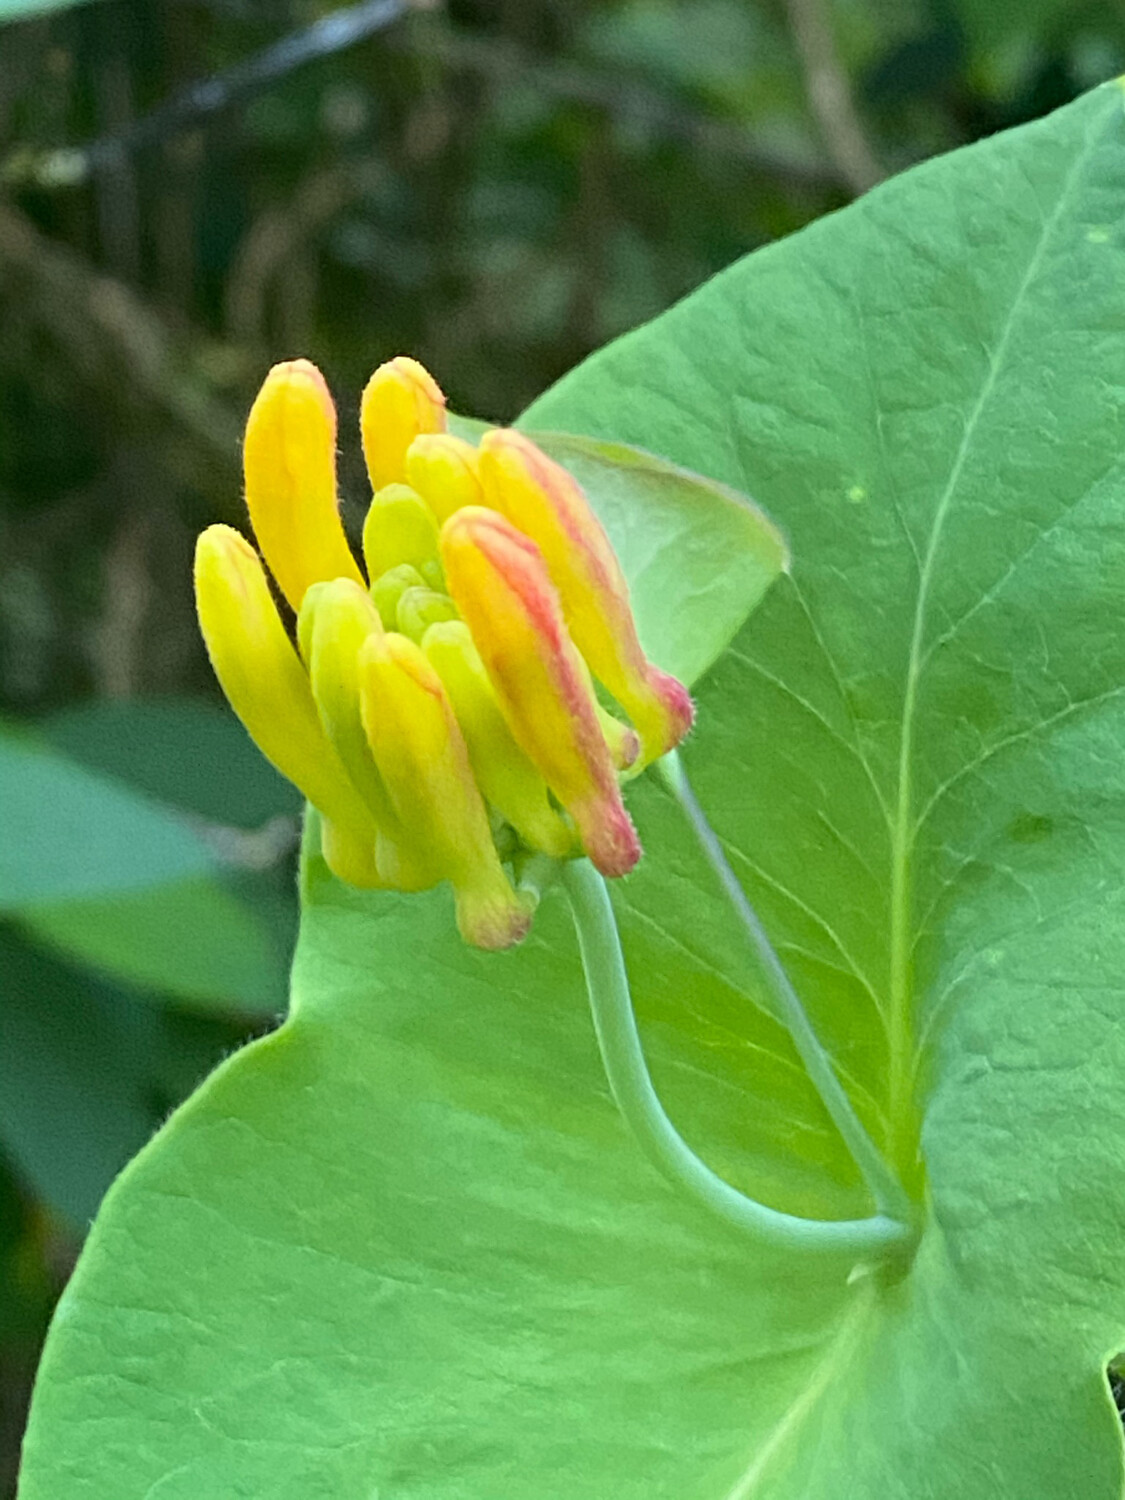 yellow honeysuckle flower